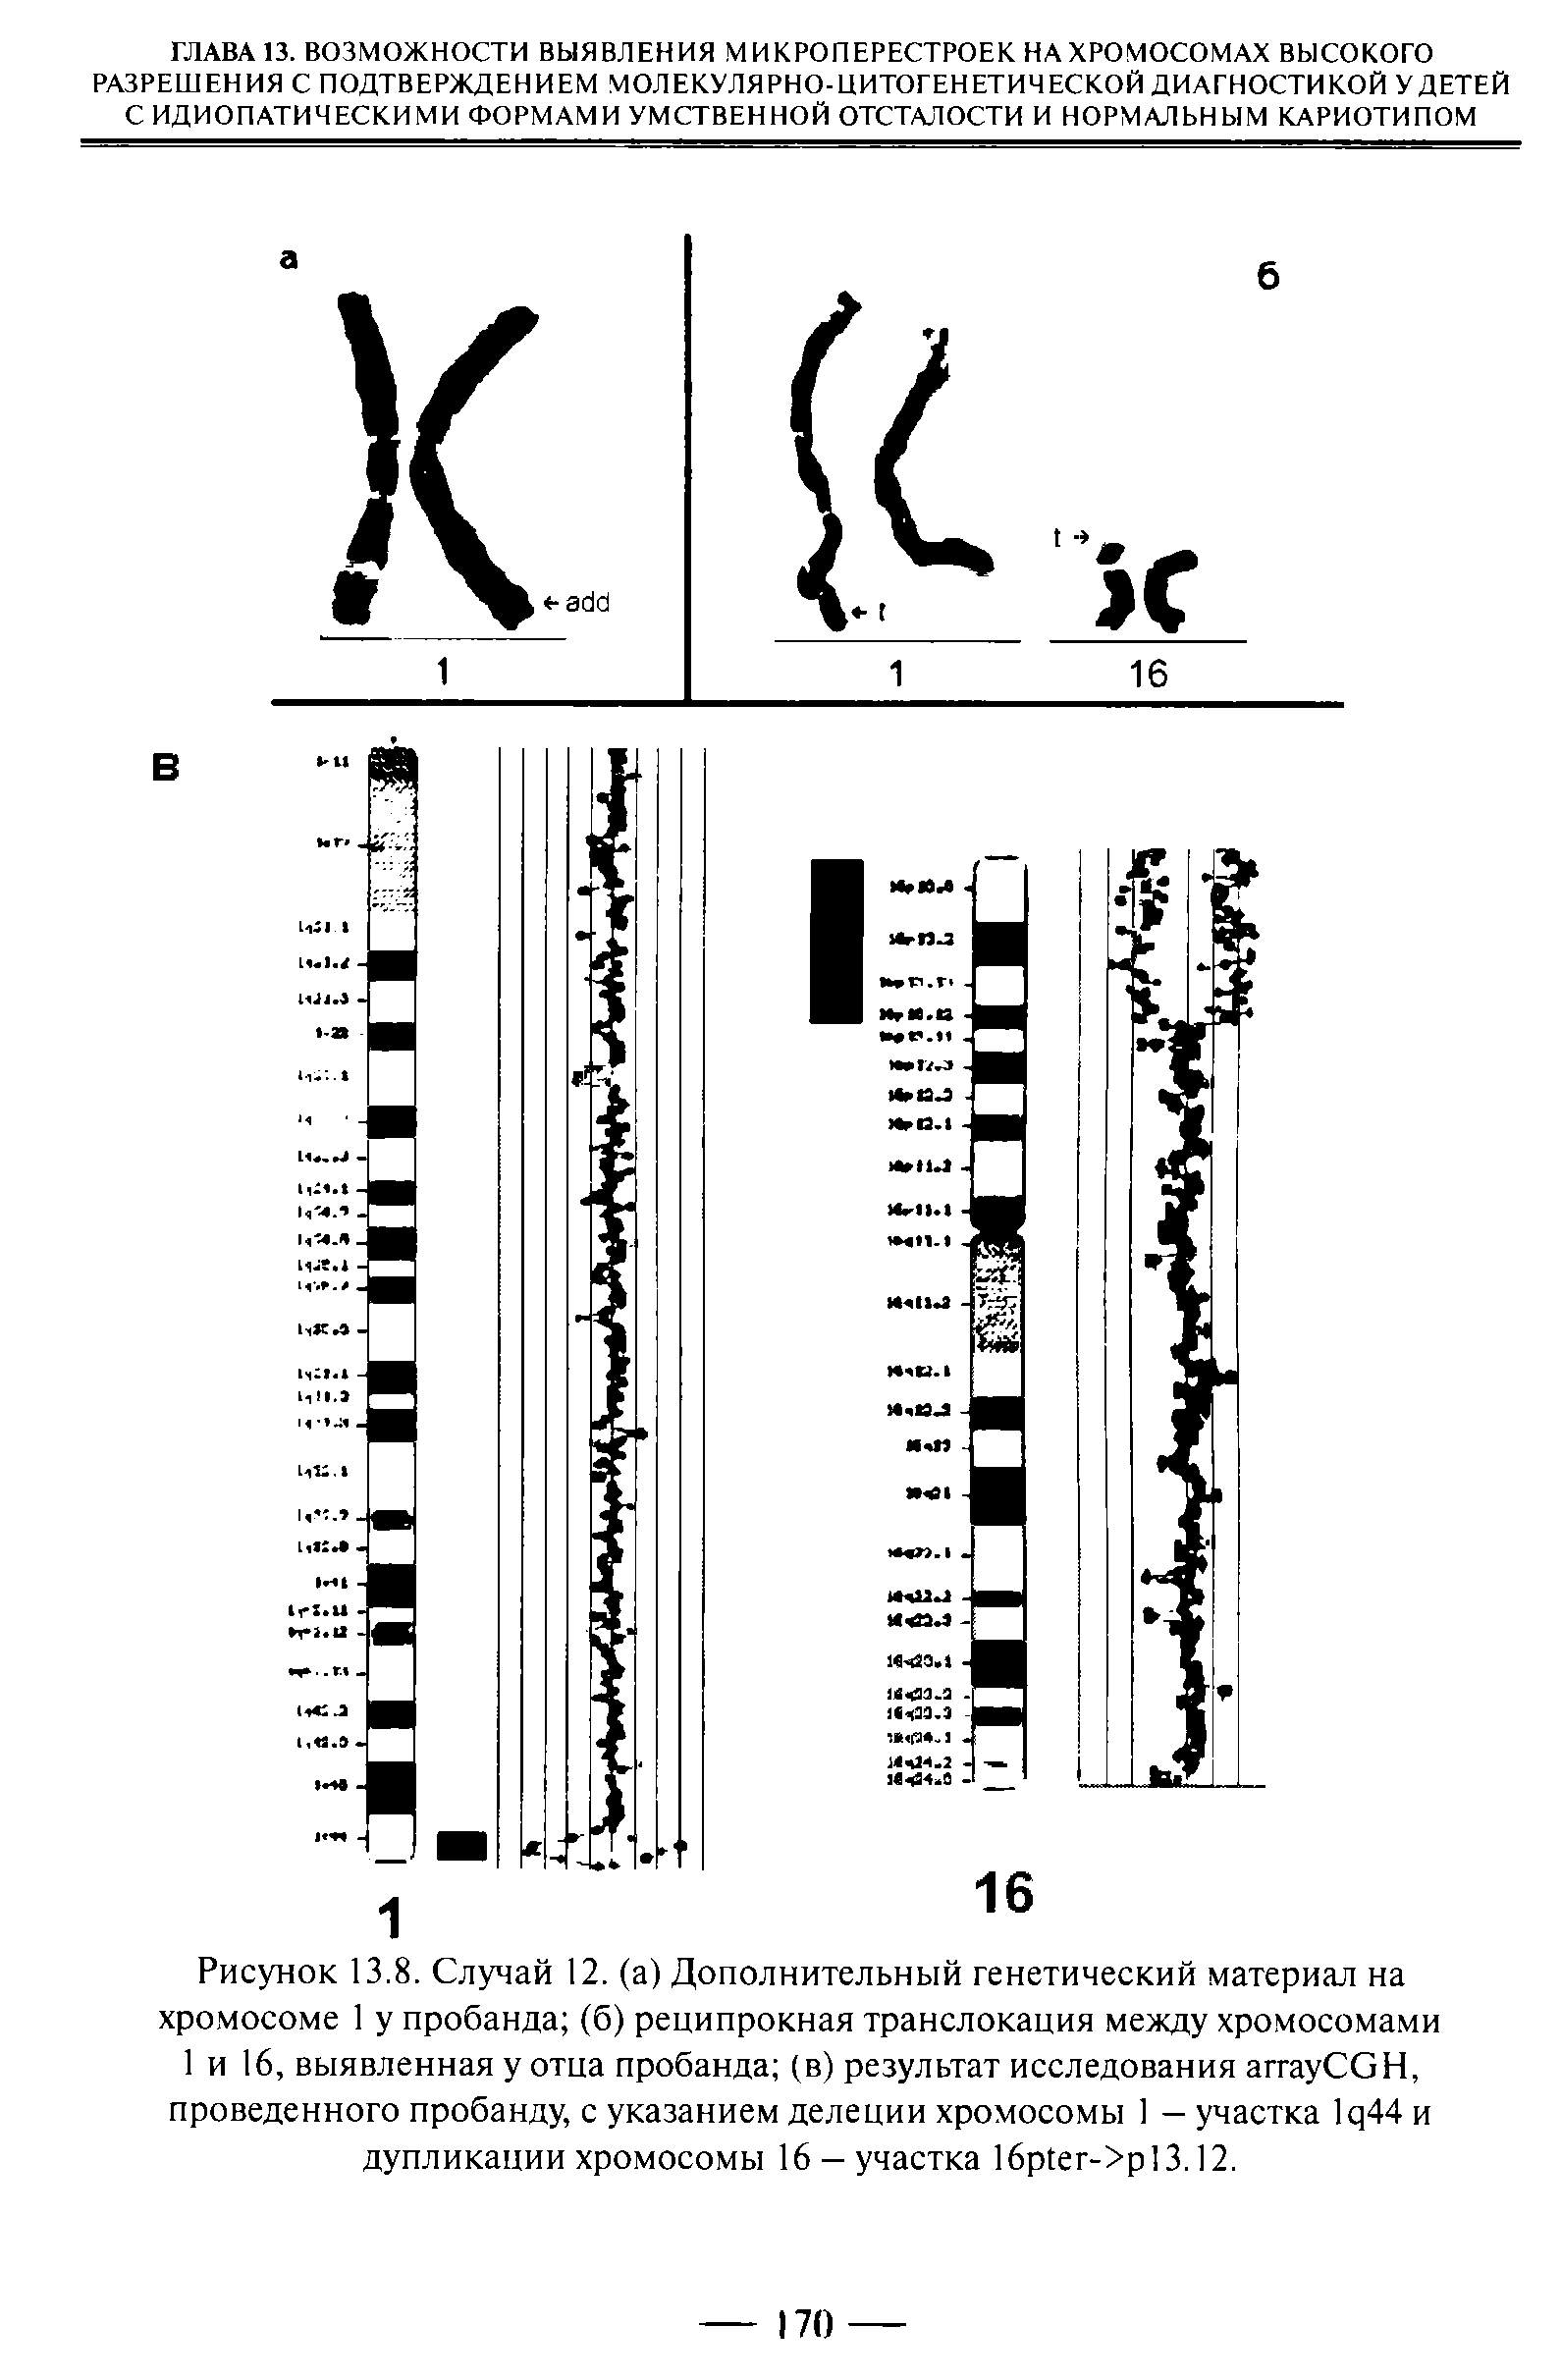 Рисунок 13.8. Случай 12. (а) Дополнительный генетический материал на хромосоме 1 у пробанда (б) реципрокная транслокация между хромосомами 1 и 16, выявленная у отца пробанда (в) результат исследования аггауСОН, проведенного пробанду, с указанием делеции хромосомы 1 — участка 1 ц44 и дупликации хромосомы 16 - участка 16р1ег->р13.12.